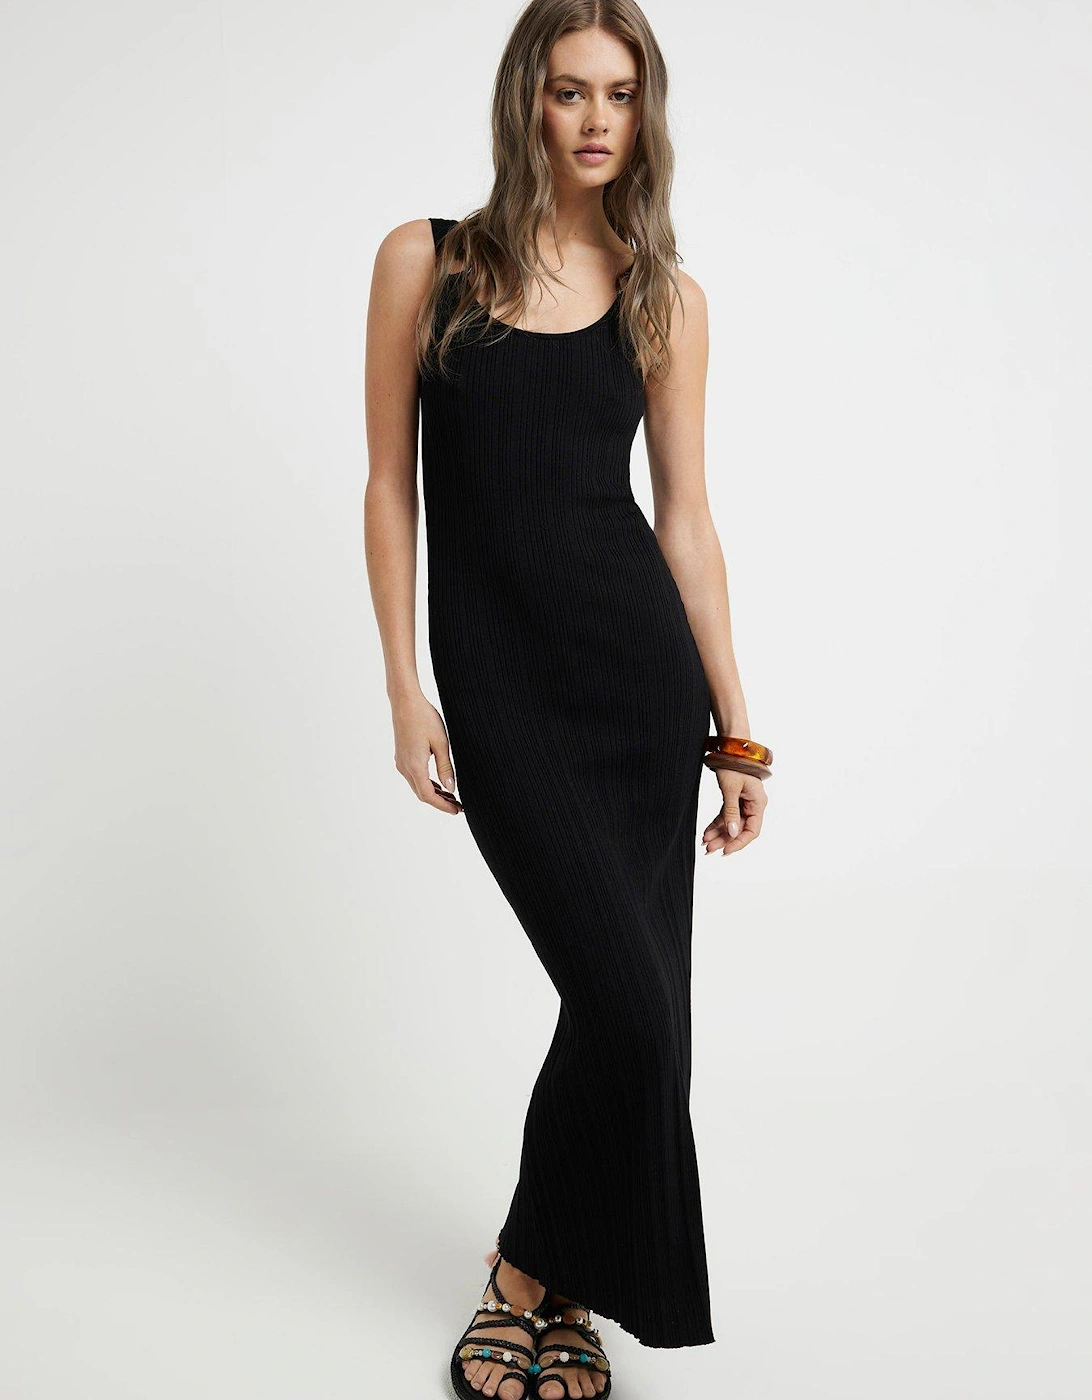 Rib Knit Dress - Black, 2 of 1